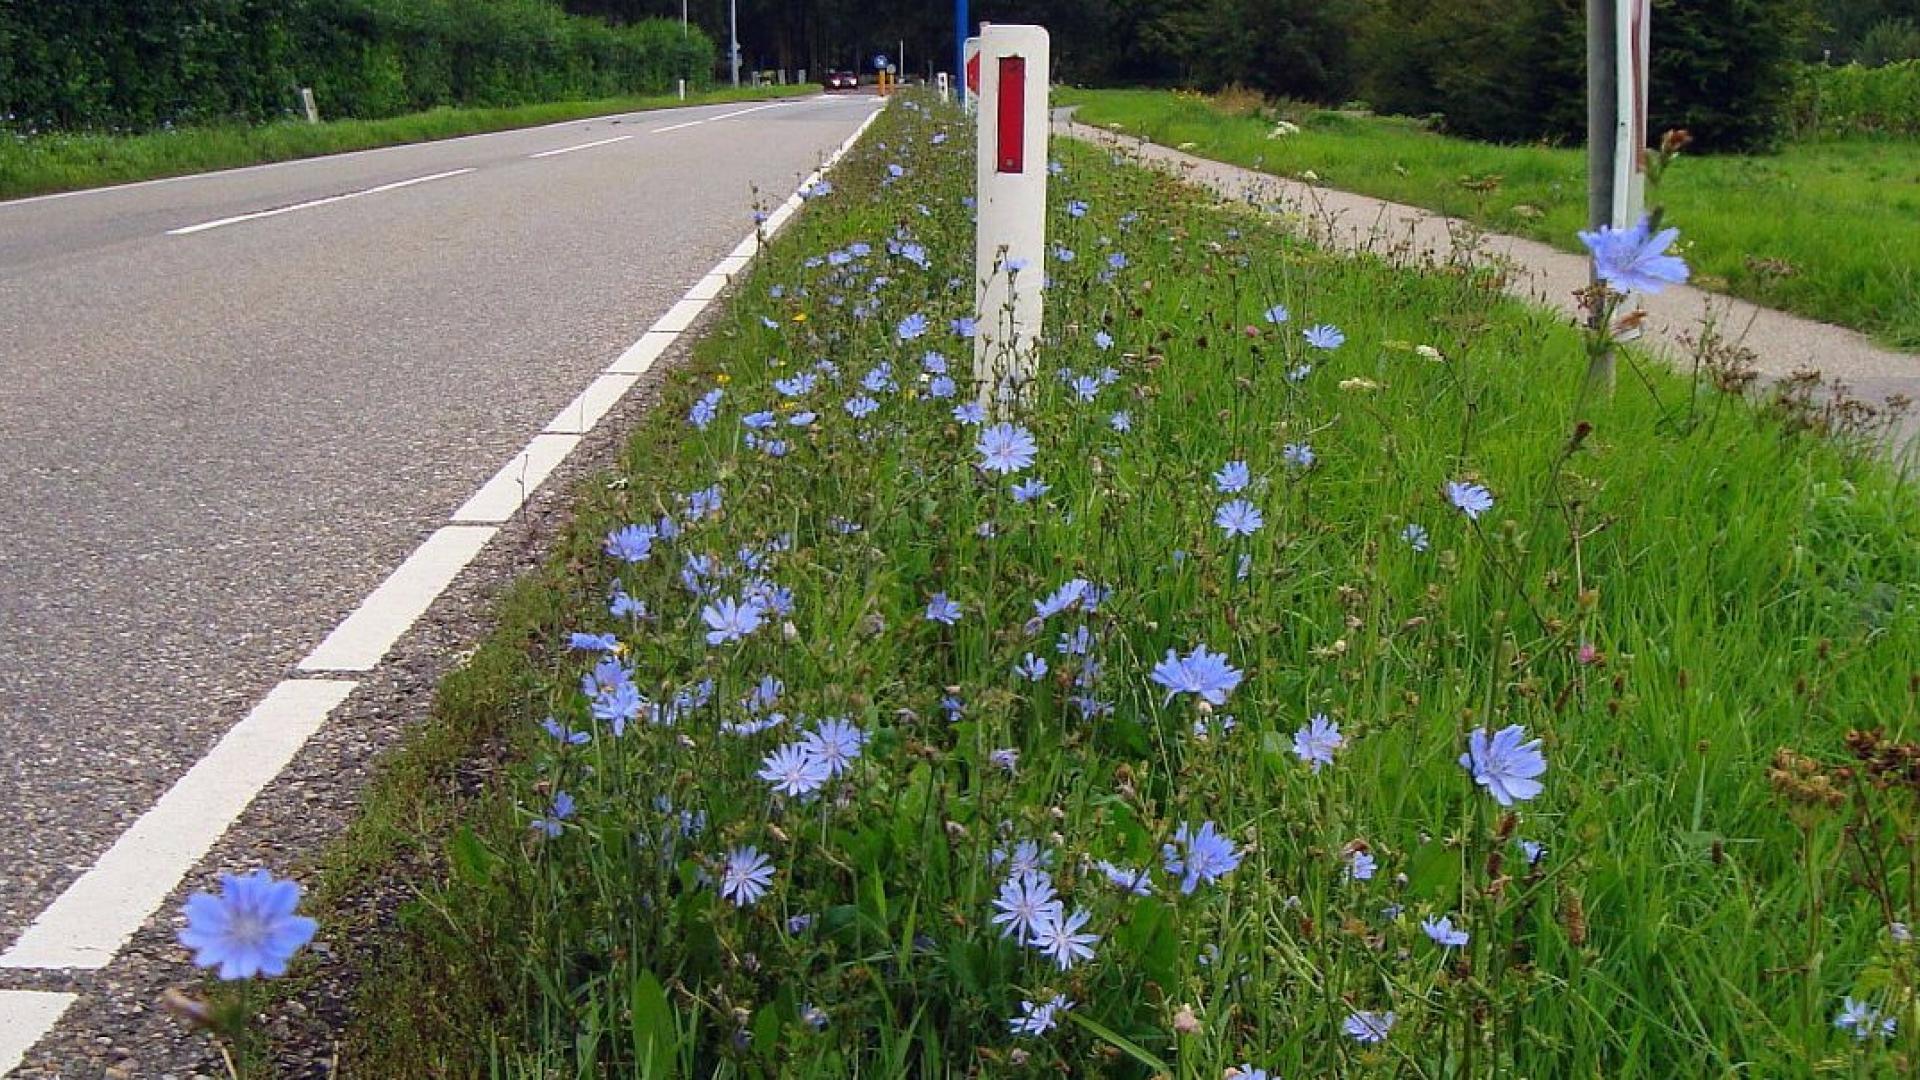 Wilde cichorei in de berm van een weg in Nederland.